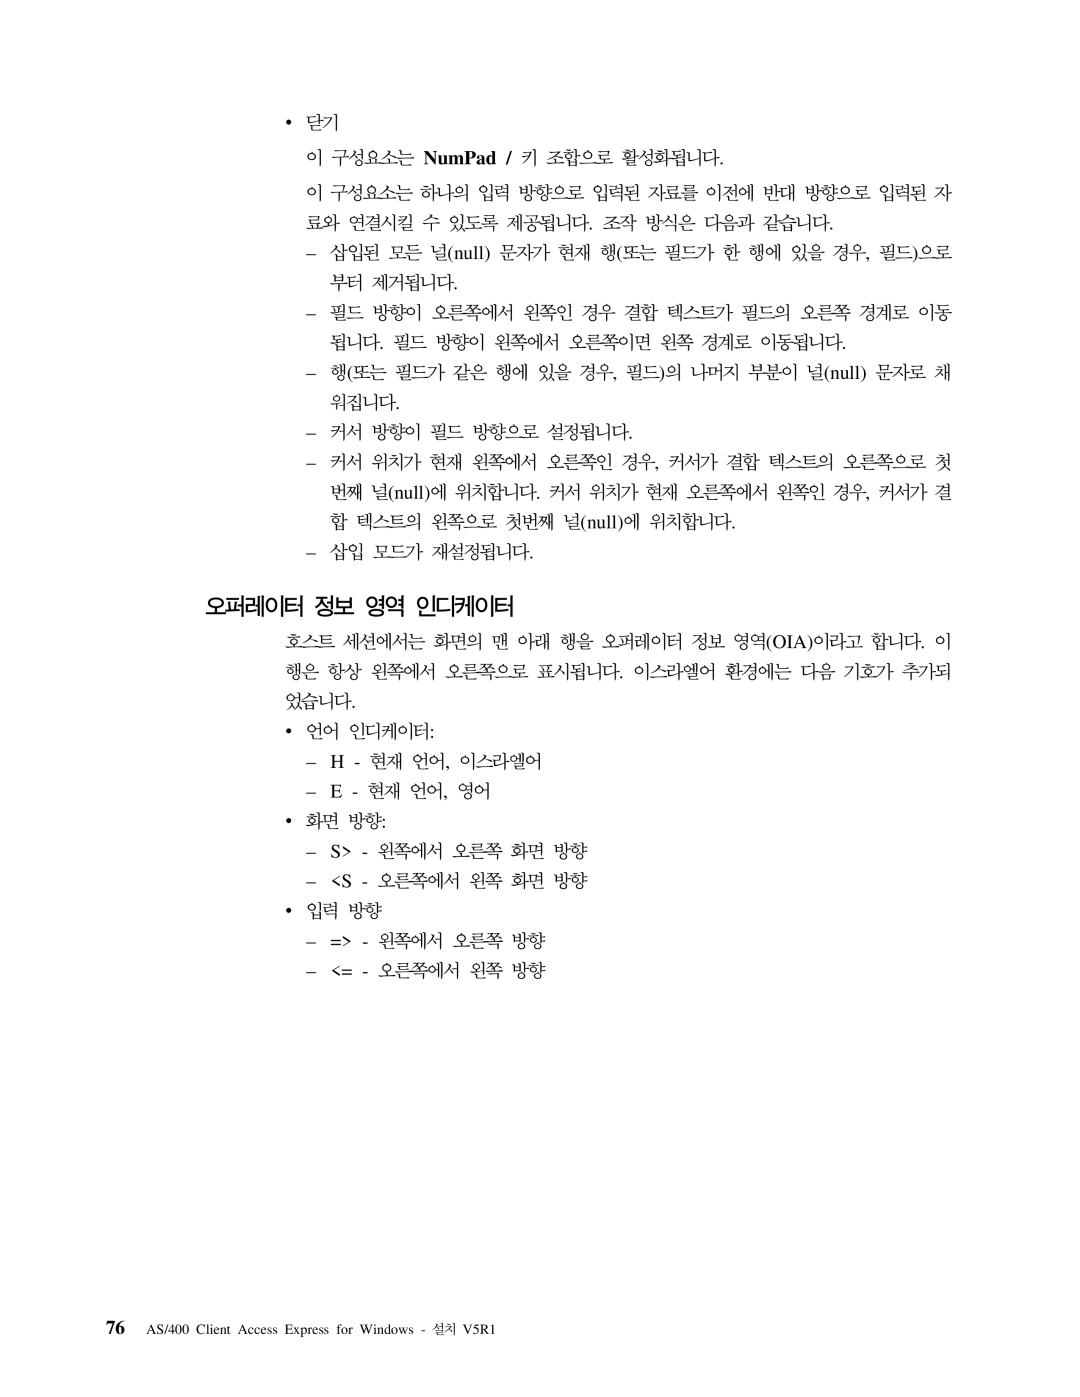 IBM SA30-0949-02 manual NumPad Null OIA 